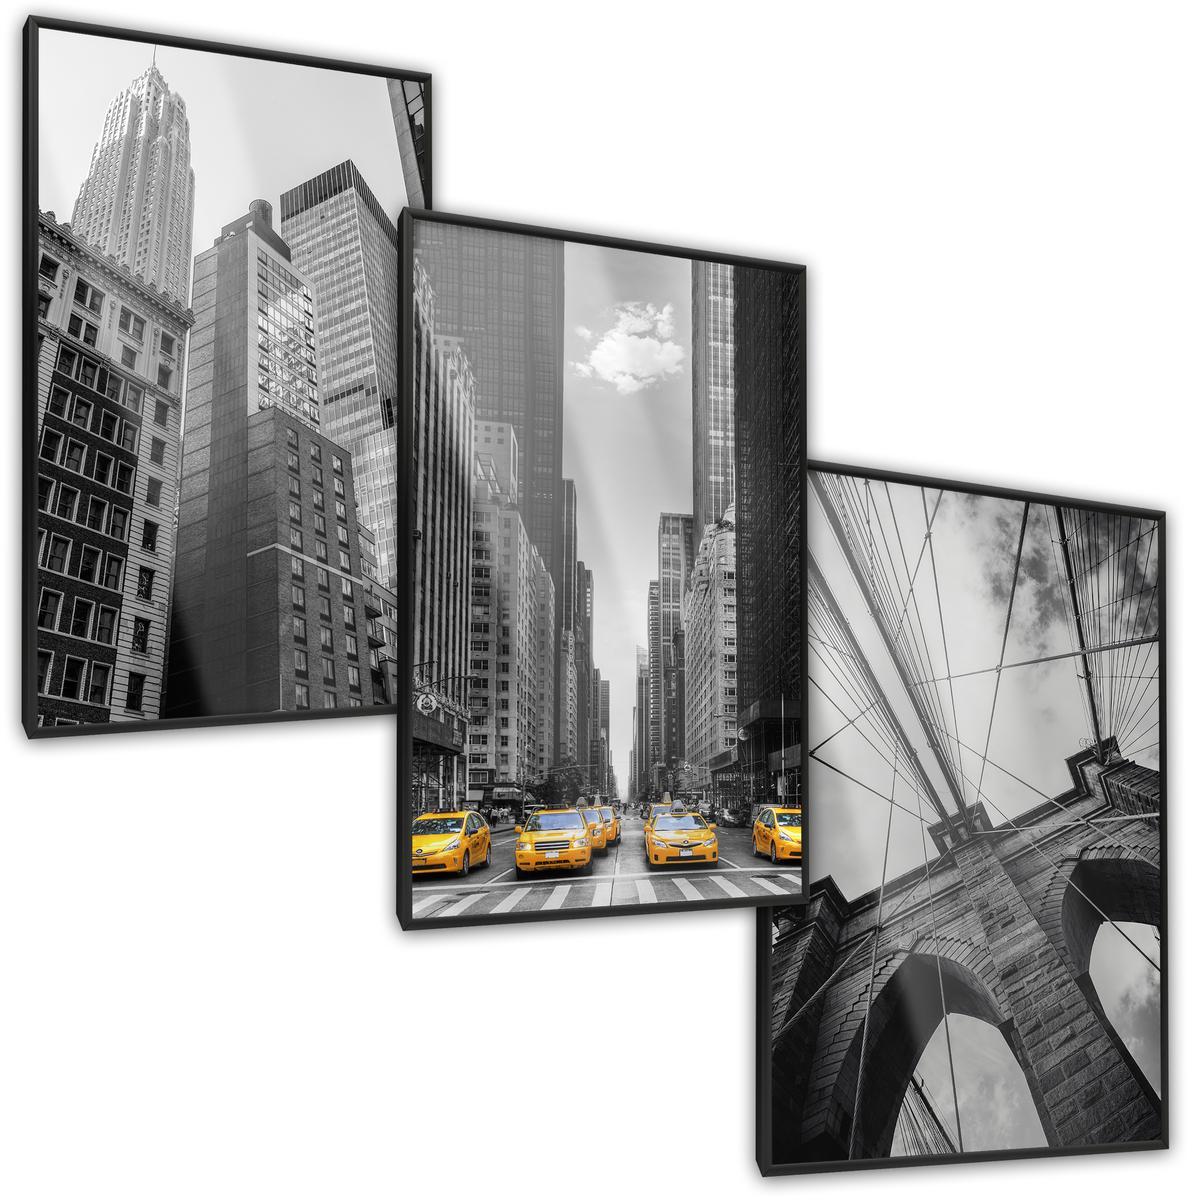 ZESTAW 3x Plakat W Ramie NEW YORK Wieżowce Architektura Efekt 3D 60x80cm nr. 2